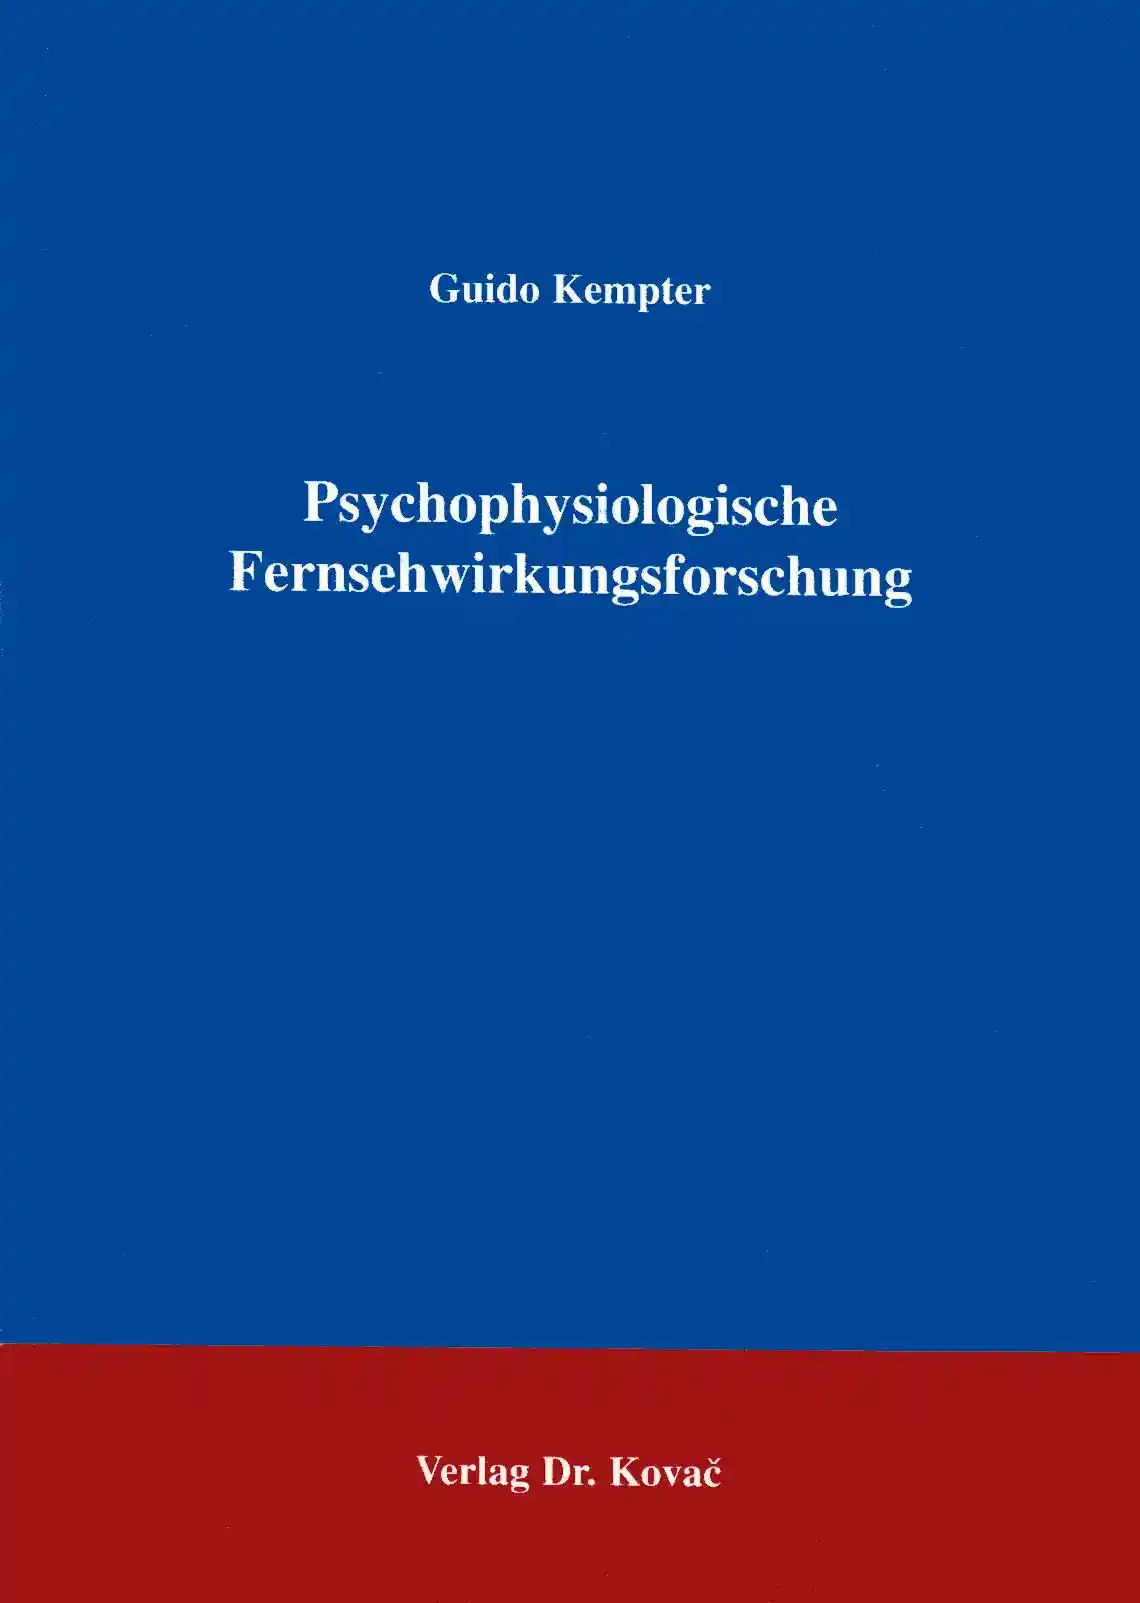  Forschungsarbeit: Psychophysiologische Fernsehwirkungsforschung